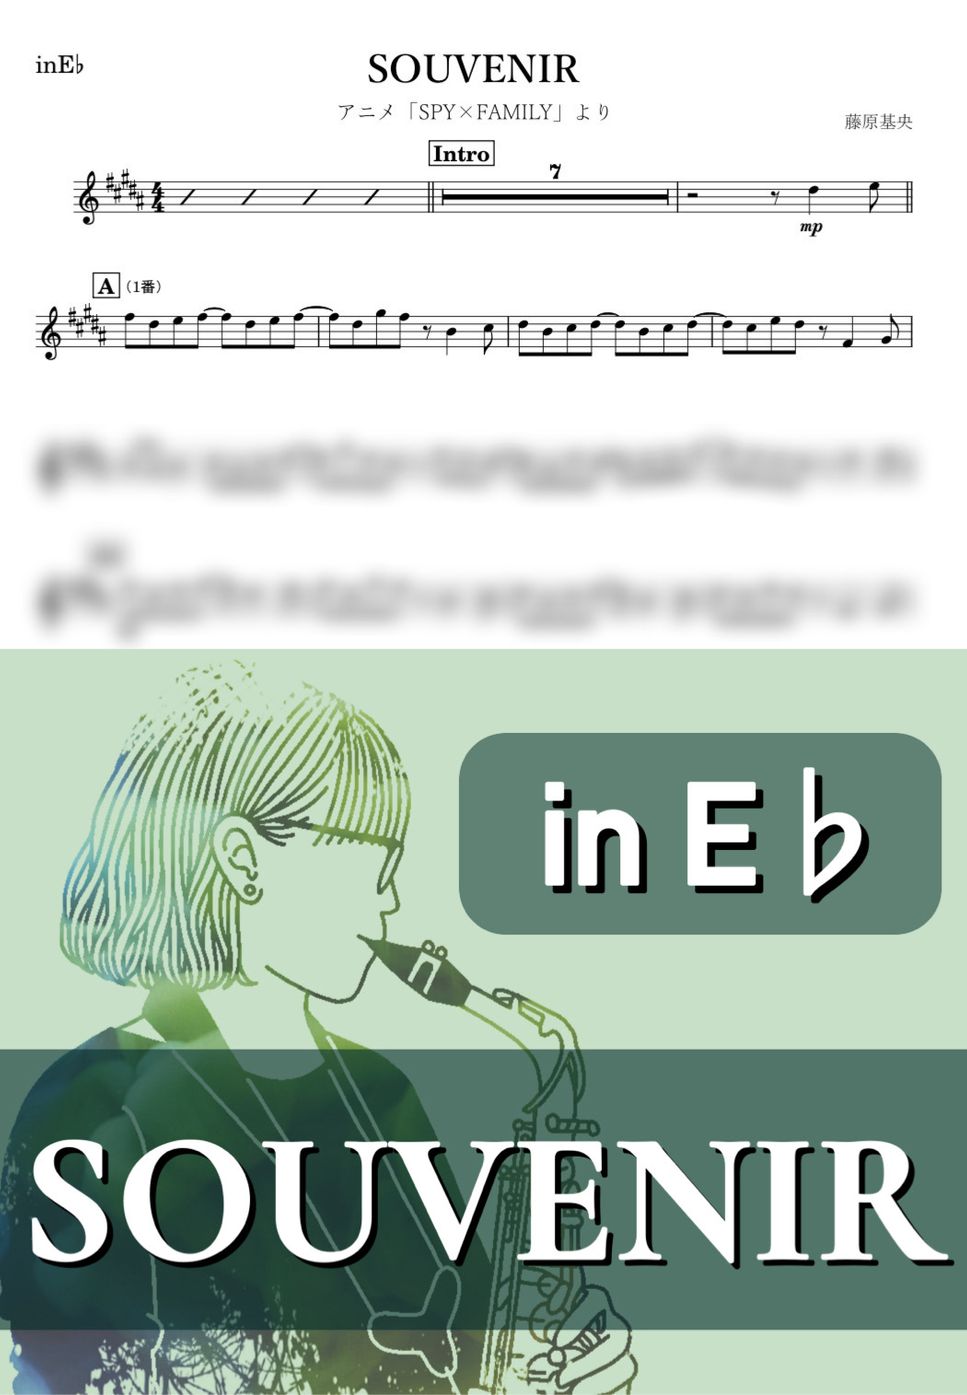 SPY×FAMILY - SOUVENIR (E♭) by kanamusic